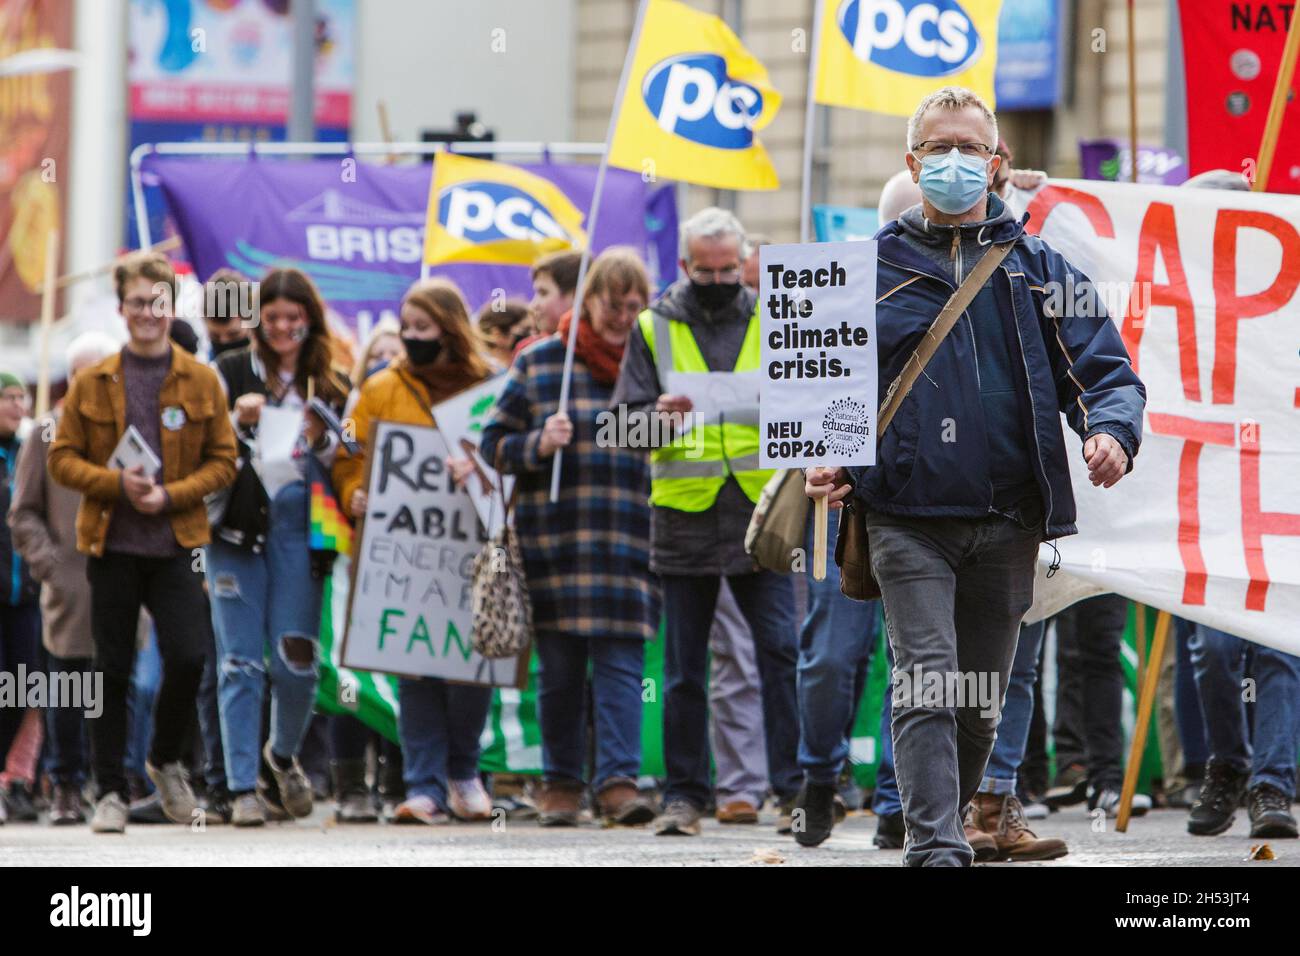 Bristol, Royaume-Uni, 6 novembre 2021.Des manifestants portant des pancartes et des panneaux de signalisation sur le changement climatique sont photographiés alors qu'ils prennent part à une marche de protestation contre le changement climatique dans le centre de Bristol.Cette manifestation était l'une des centaines de personnes qui se sont déroulées dans le monde aujourd'hui alors que les gens sont descendus dans la rue pour pousser les dirigeants mondiaux à agir pendant que leurs négociateurs se rencontraient à Glasgow lors de la Conférence des Nations Unies sur les changements climatiques de la COP 2021.Credit: Lynchpics/Alamy Live News Banque D'Images